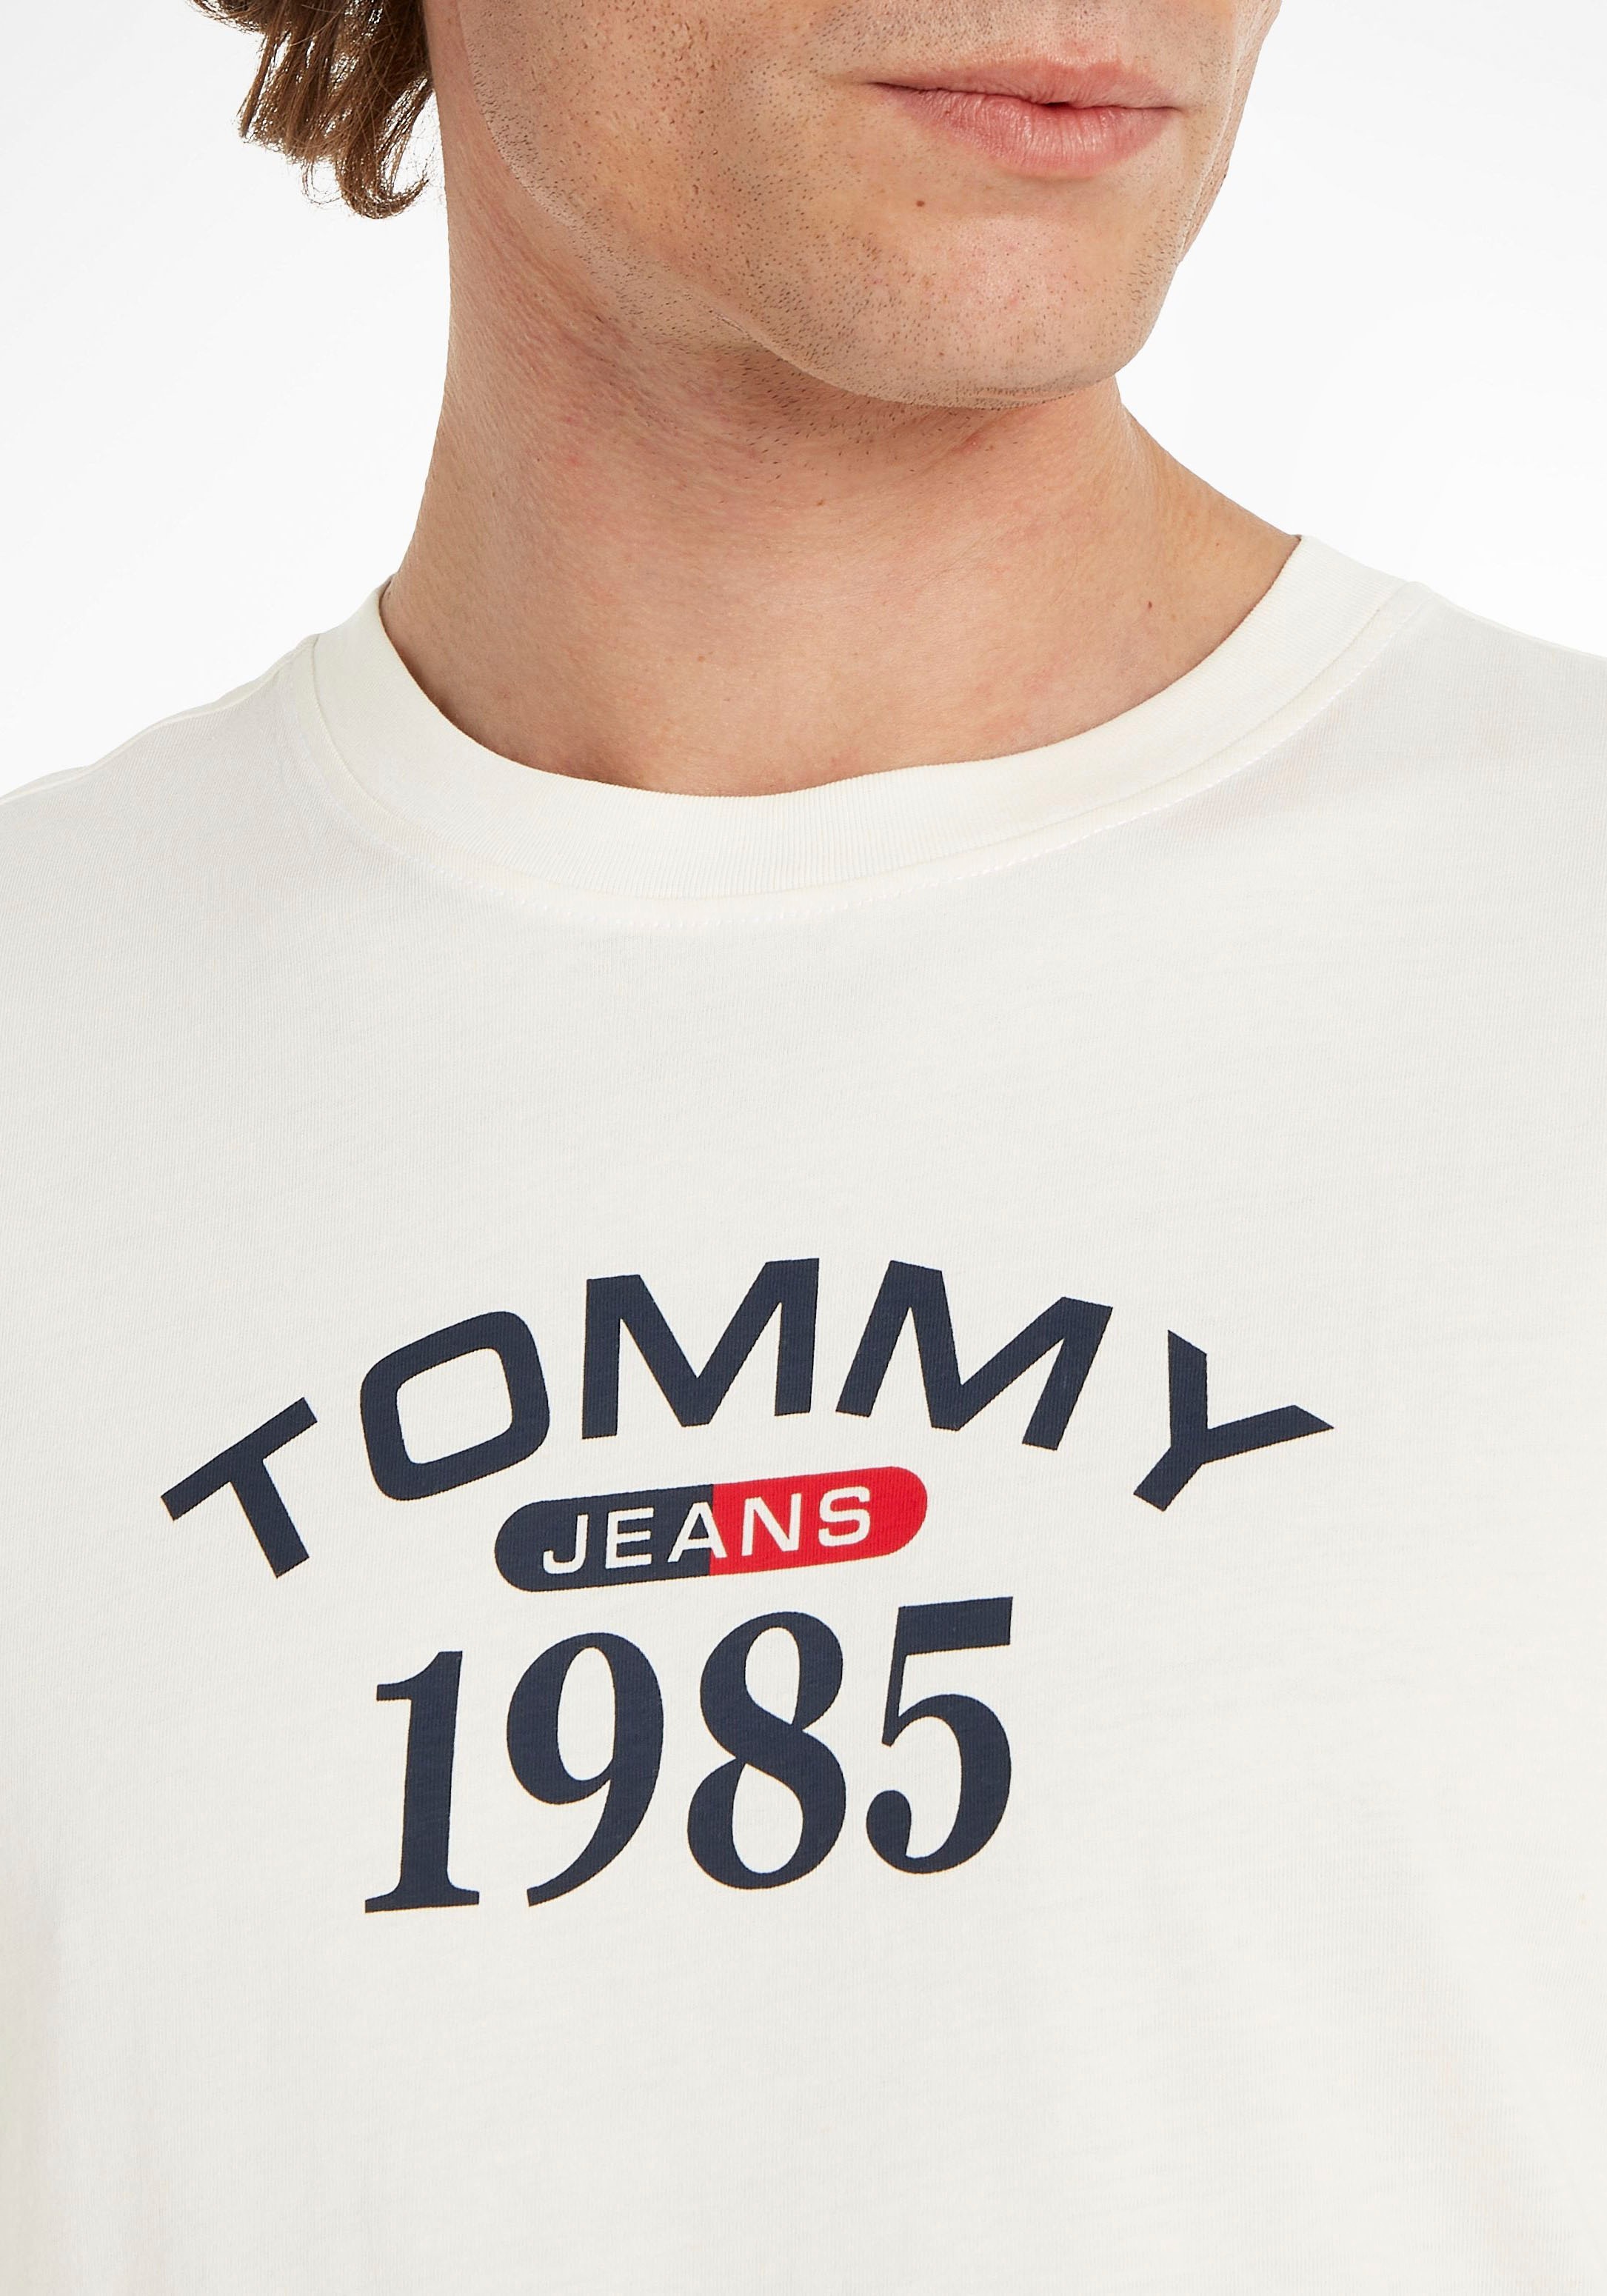 ♕ Tommy Jeans T-Shirt »TJM CLSC 1985 RWB CURVED TEE« versandkostenfrei auf